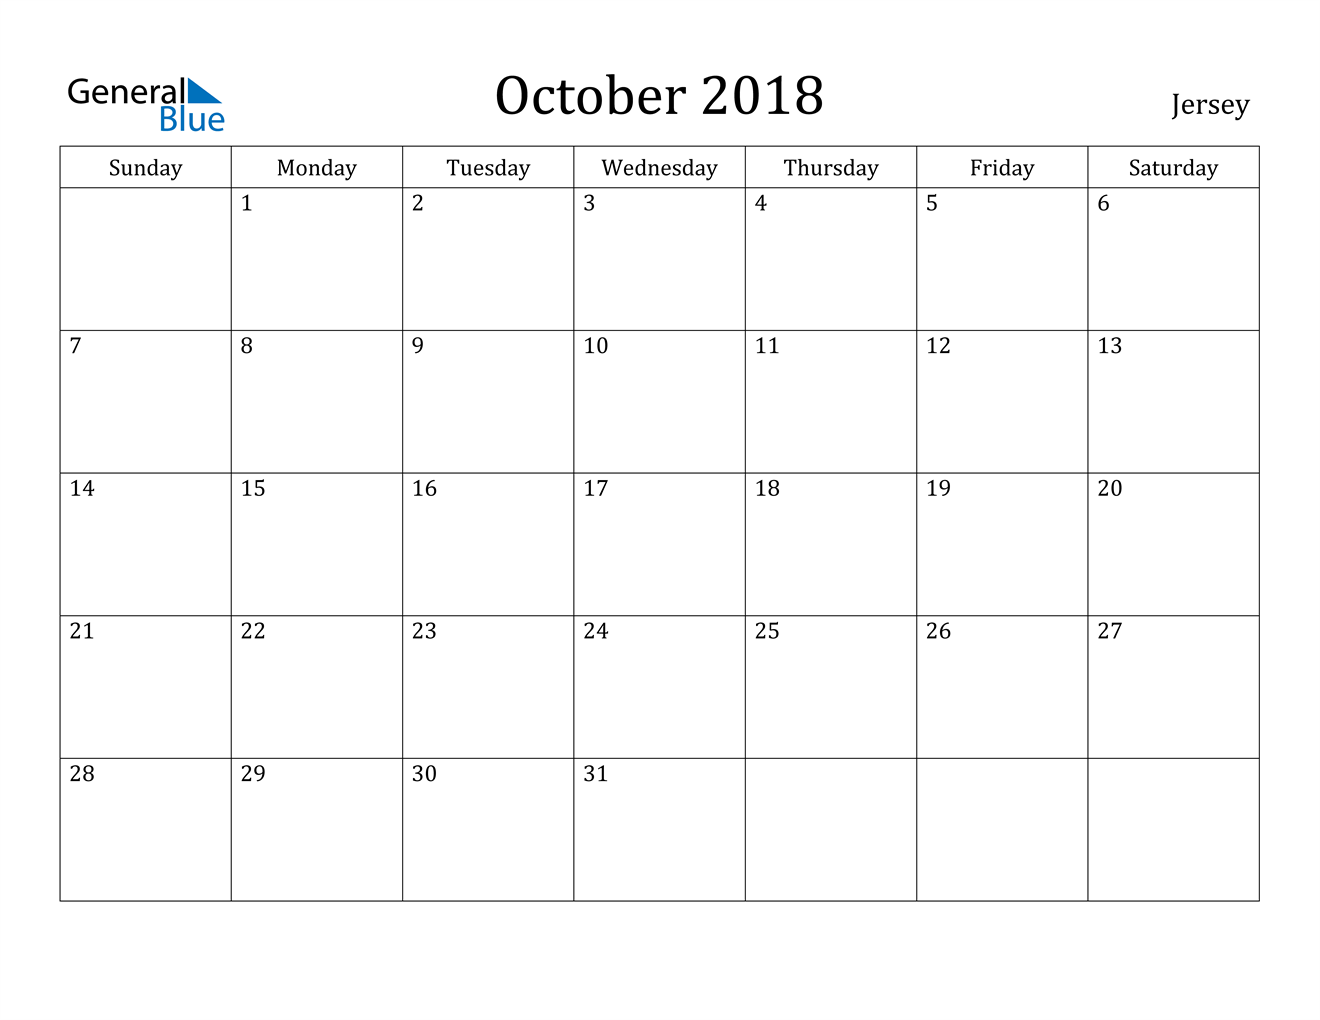 October 2018 Calendar - Jersey